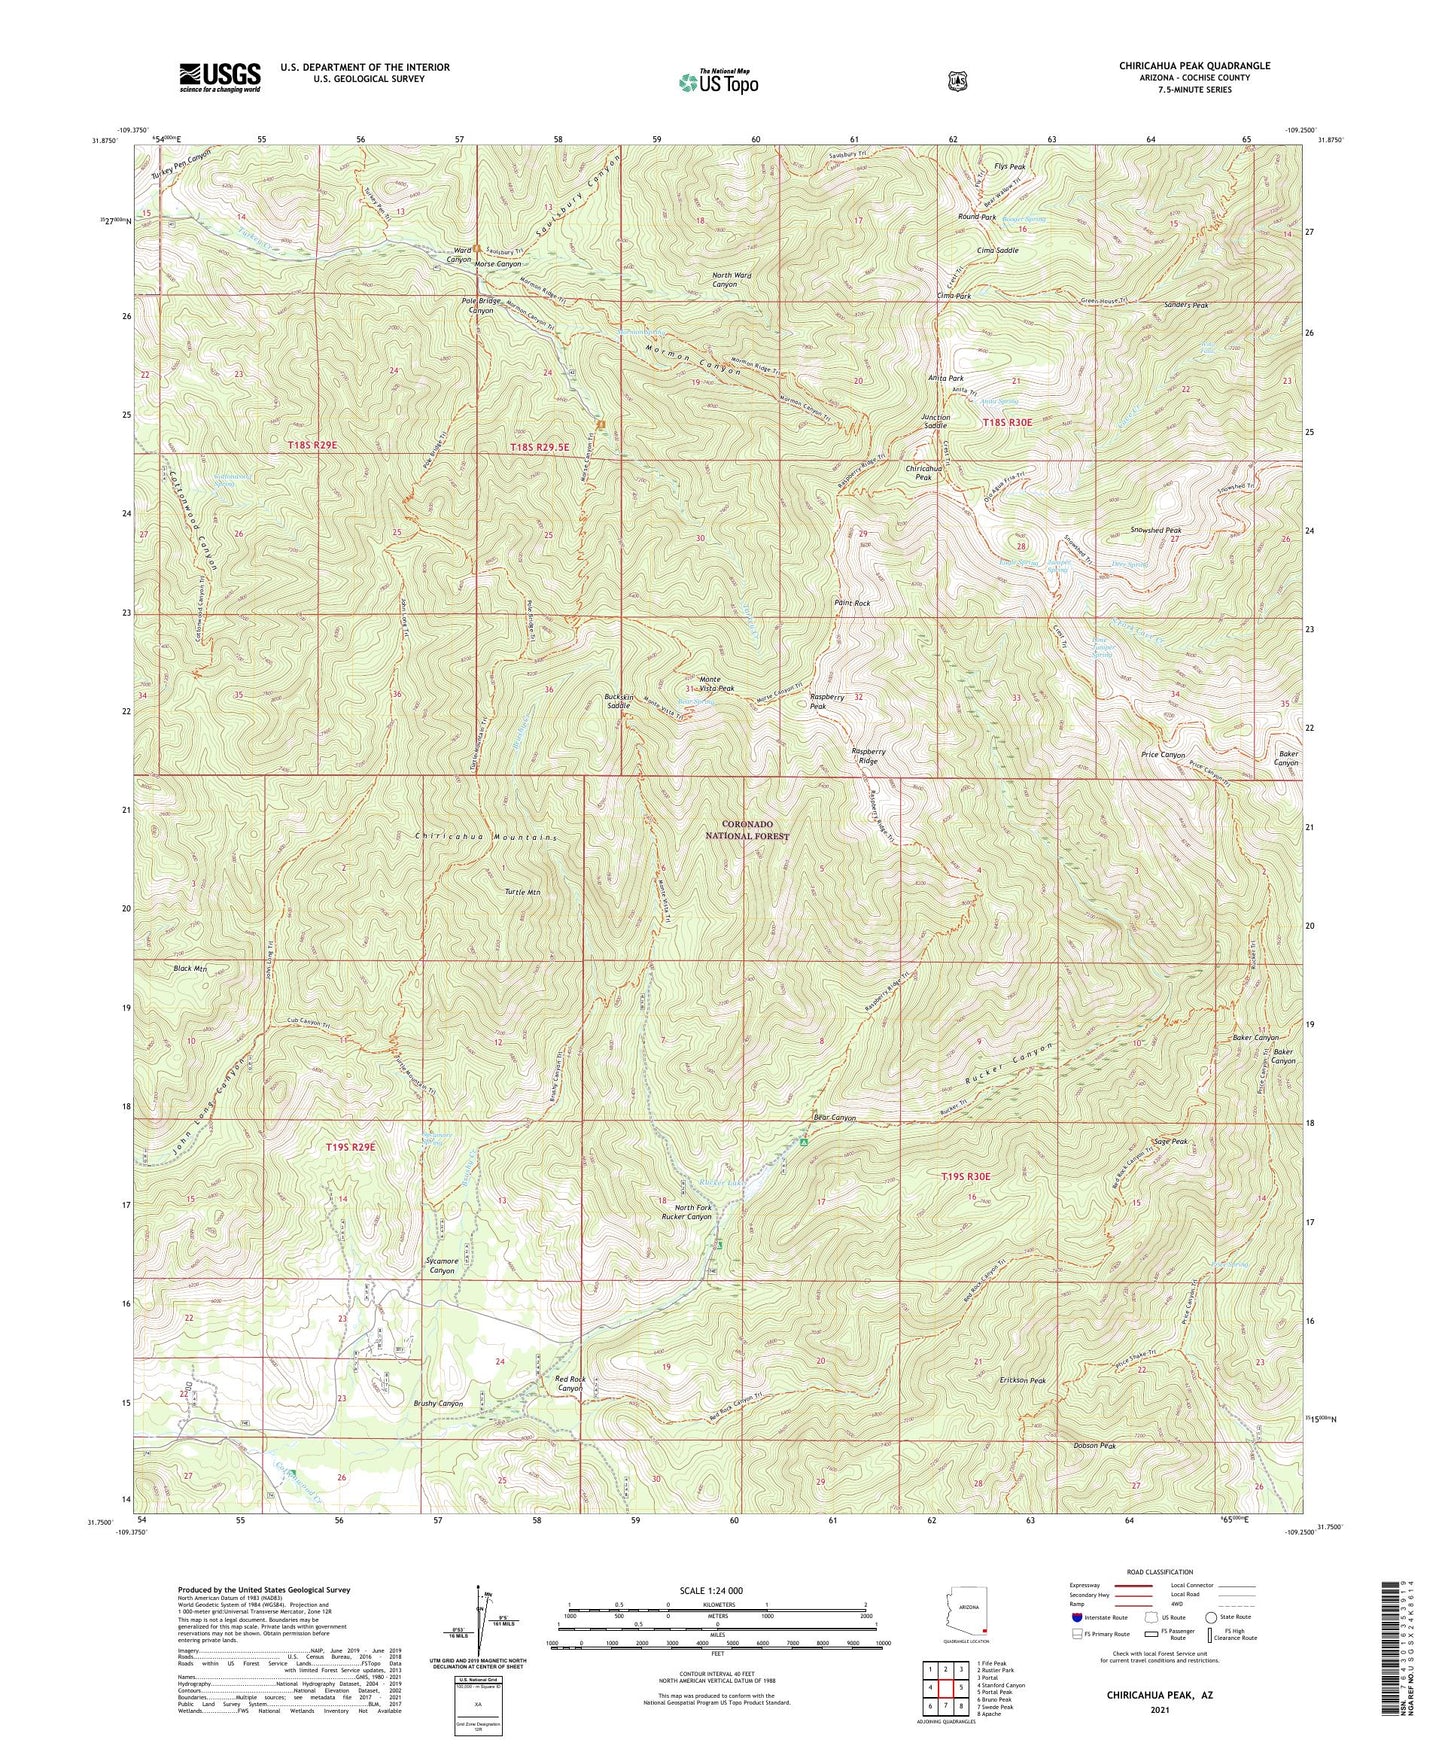 Chiricahua Peak Arizona US Topo Map Image